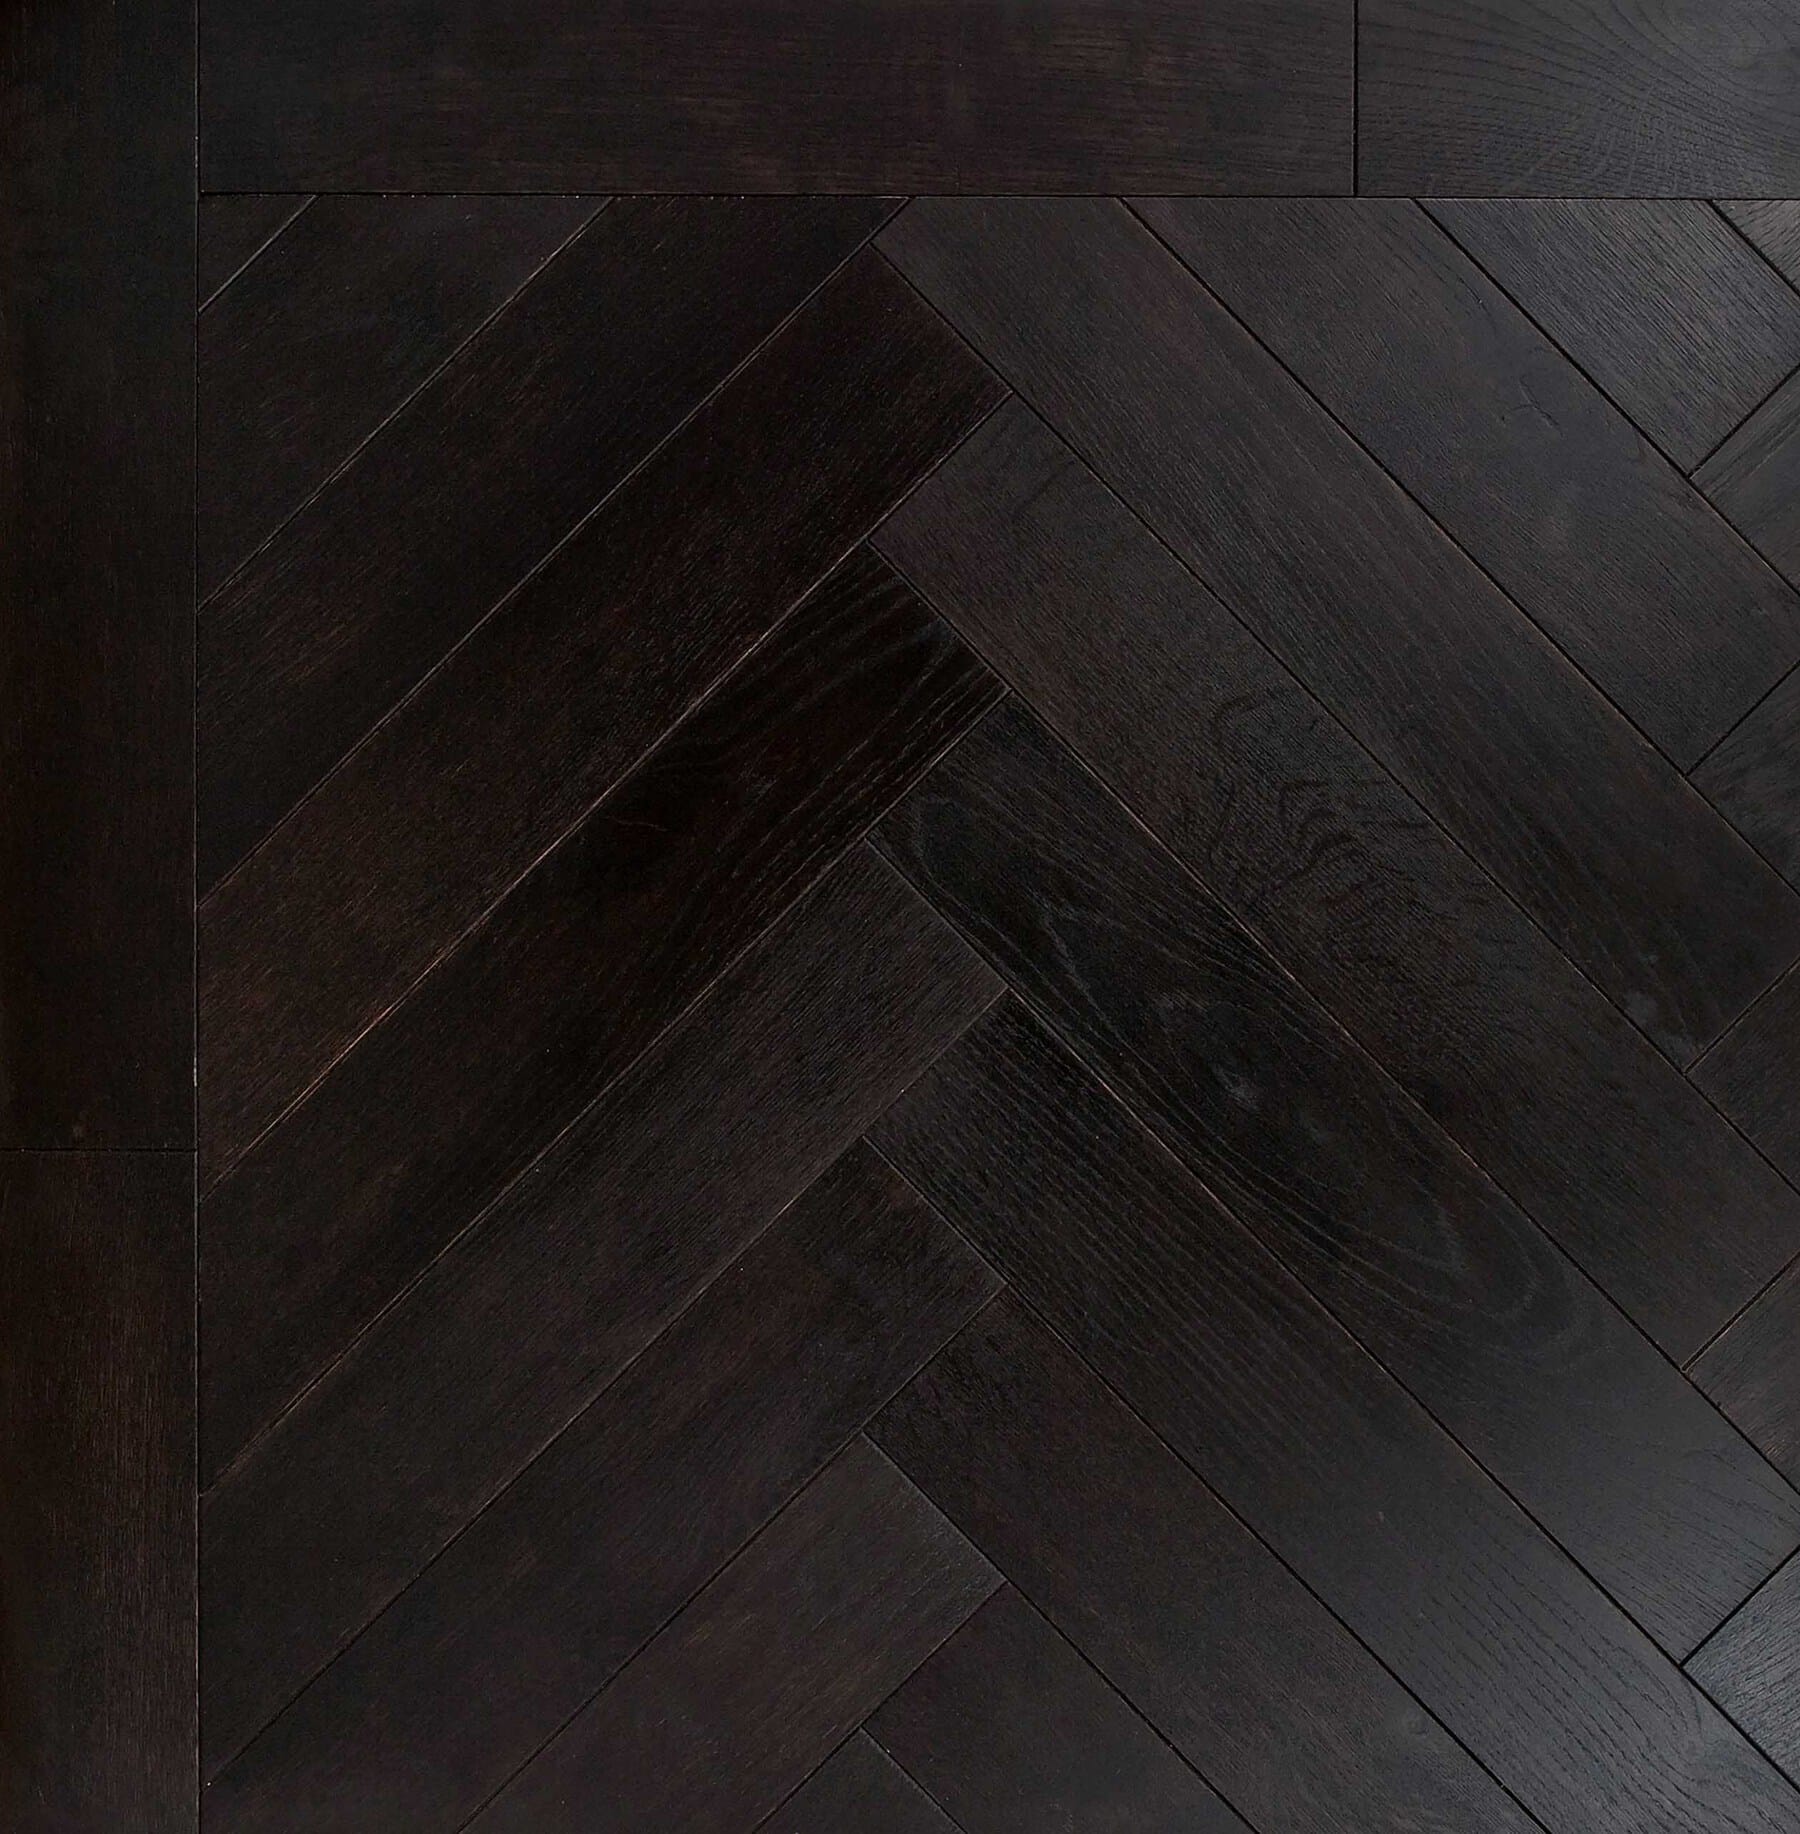 Bespoke black Herringbone engineered parquet wood flooring